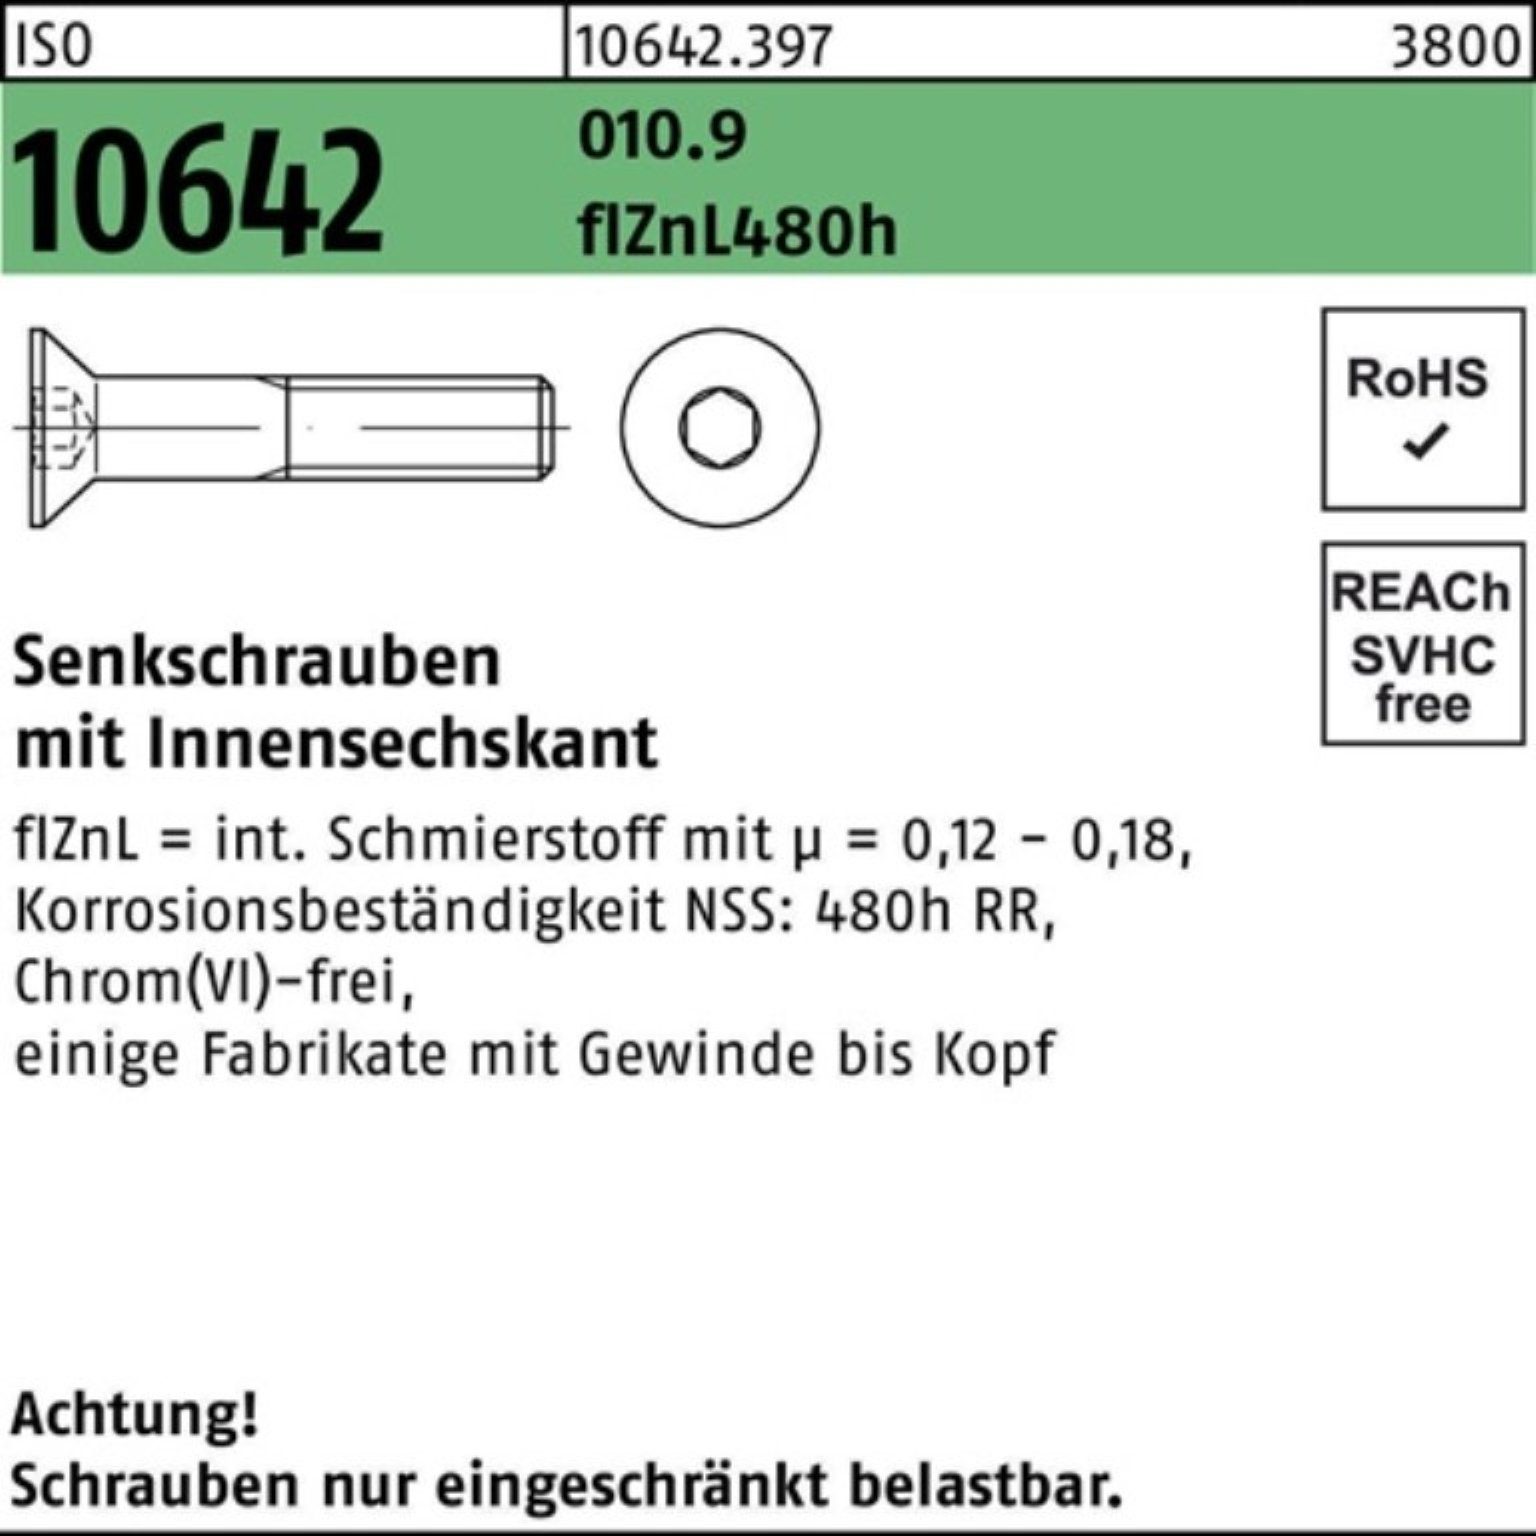 Reyher Senkschraube 100er Pack Senkschraube ISO 10642 Innen-6kt M16x70 010.9 flZnL 480h zi